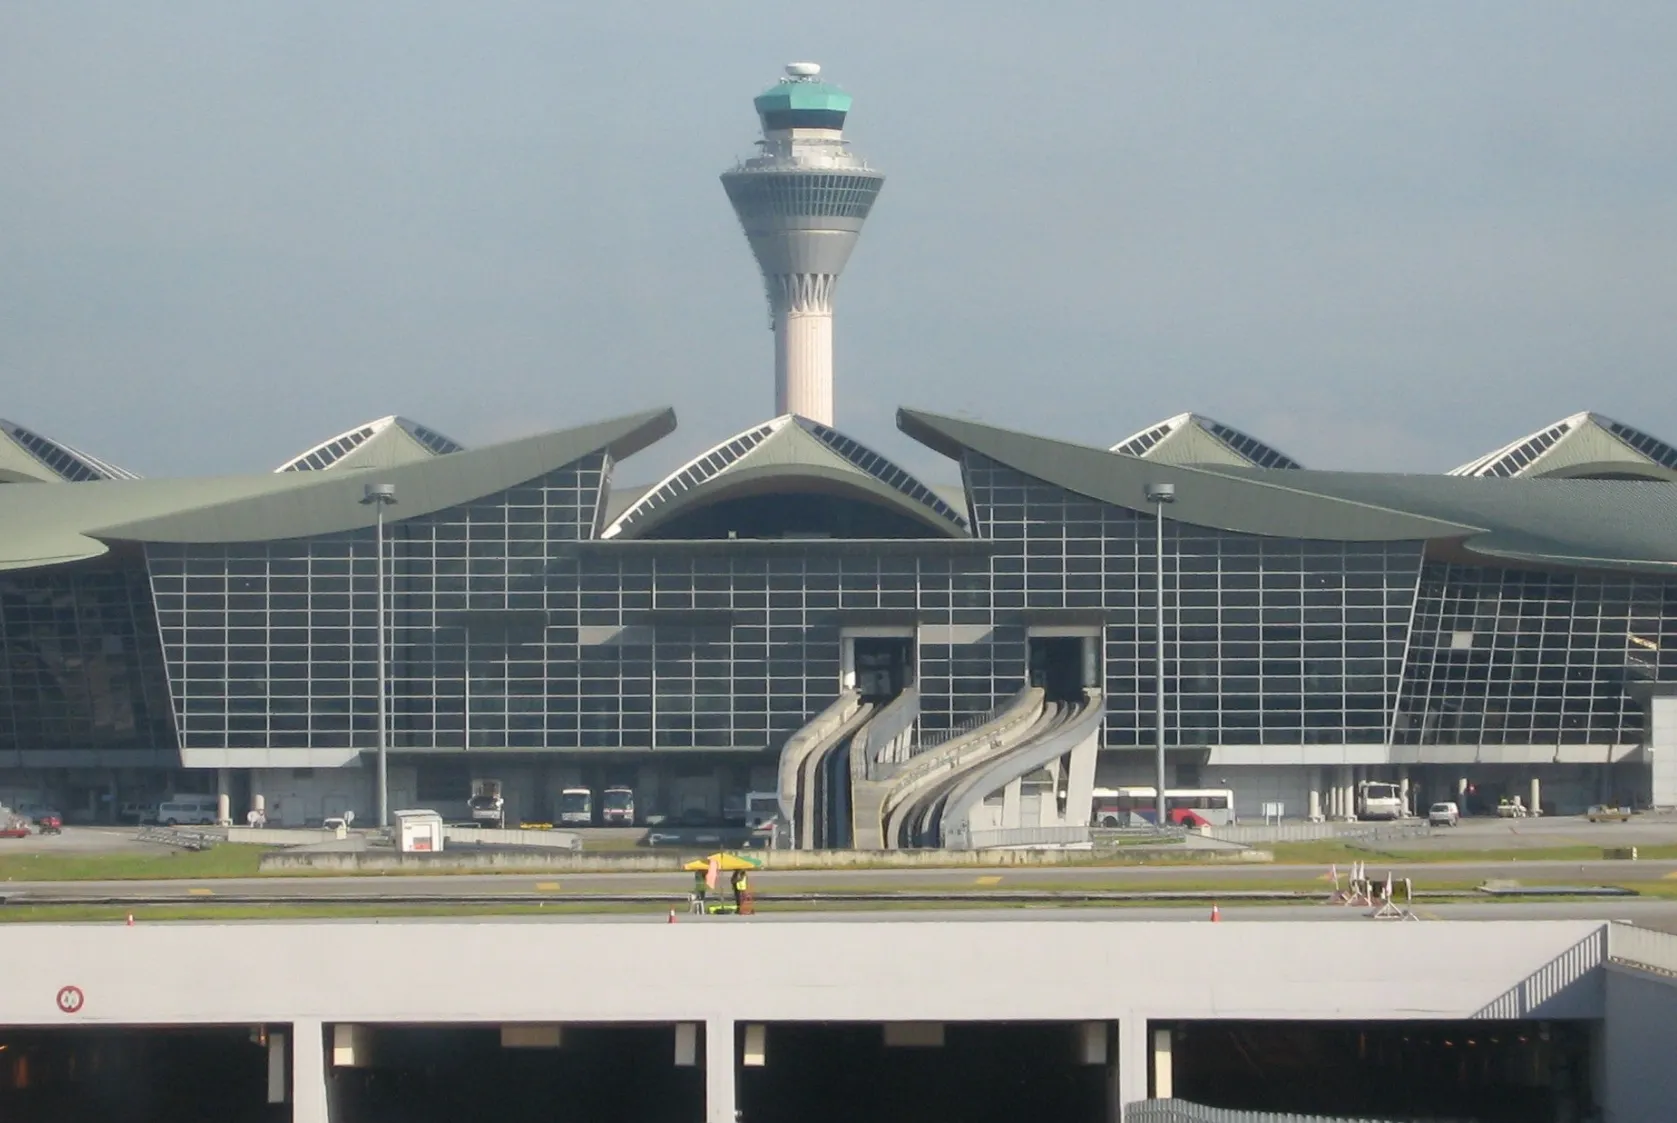 吉隆坡國際機場是距離沙登最近的機場